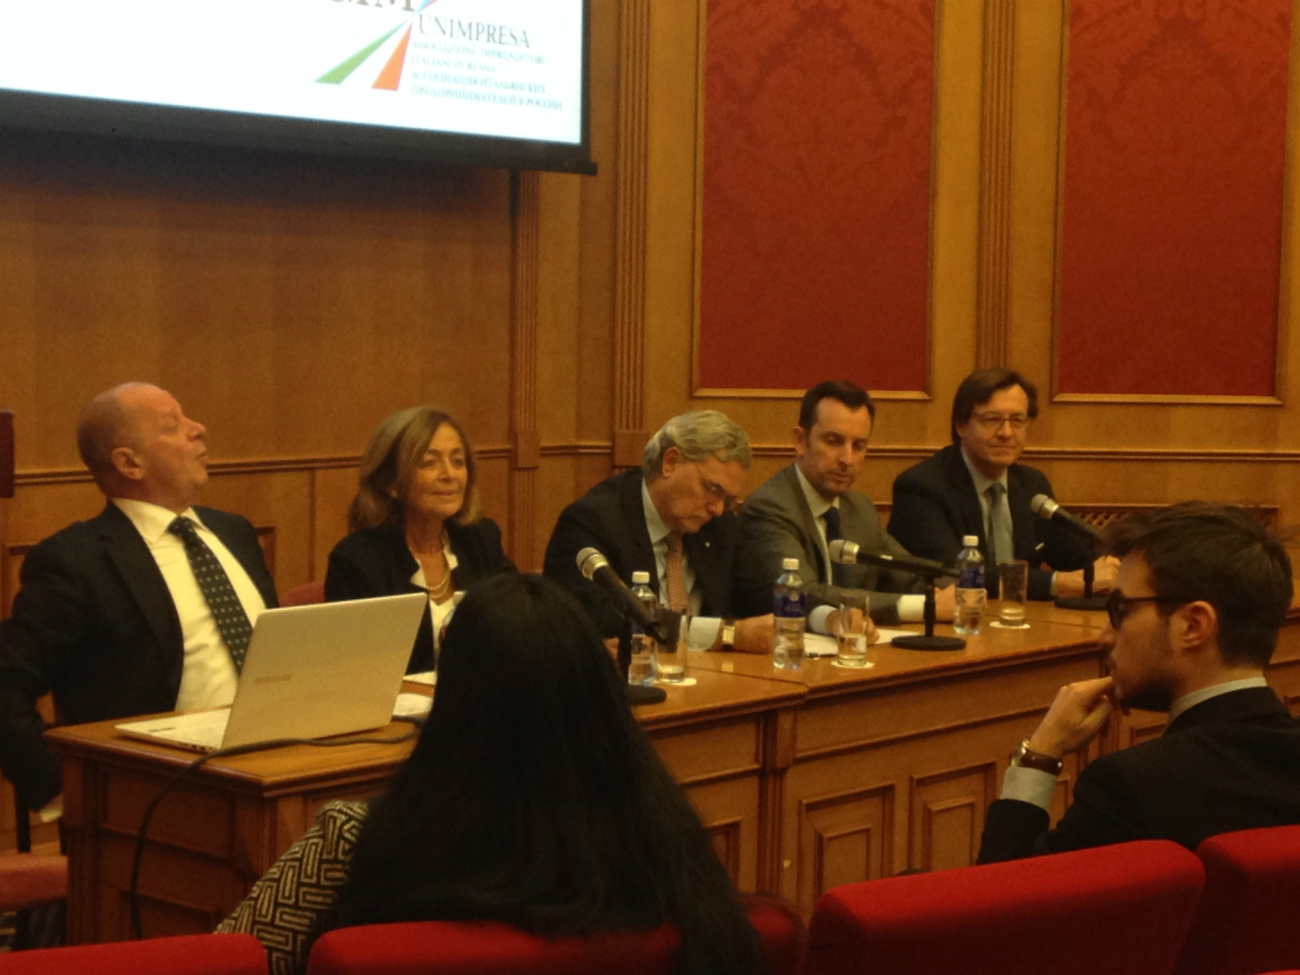 Il tavolo dei relatori. Al centro, l’ambasciatore italiano Cesare Maria Ragaglini.